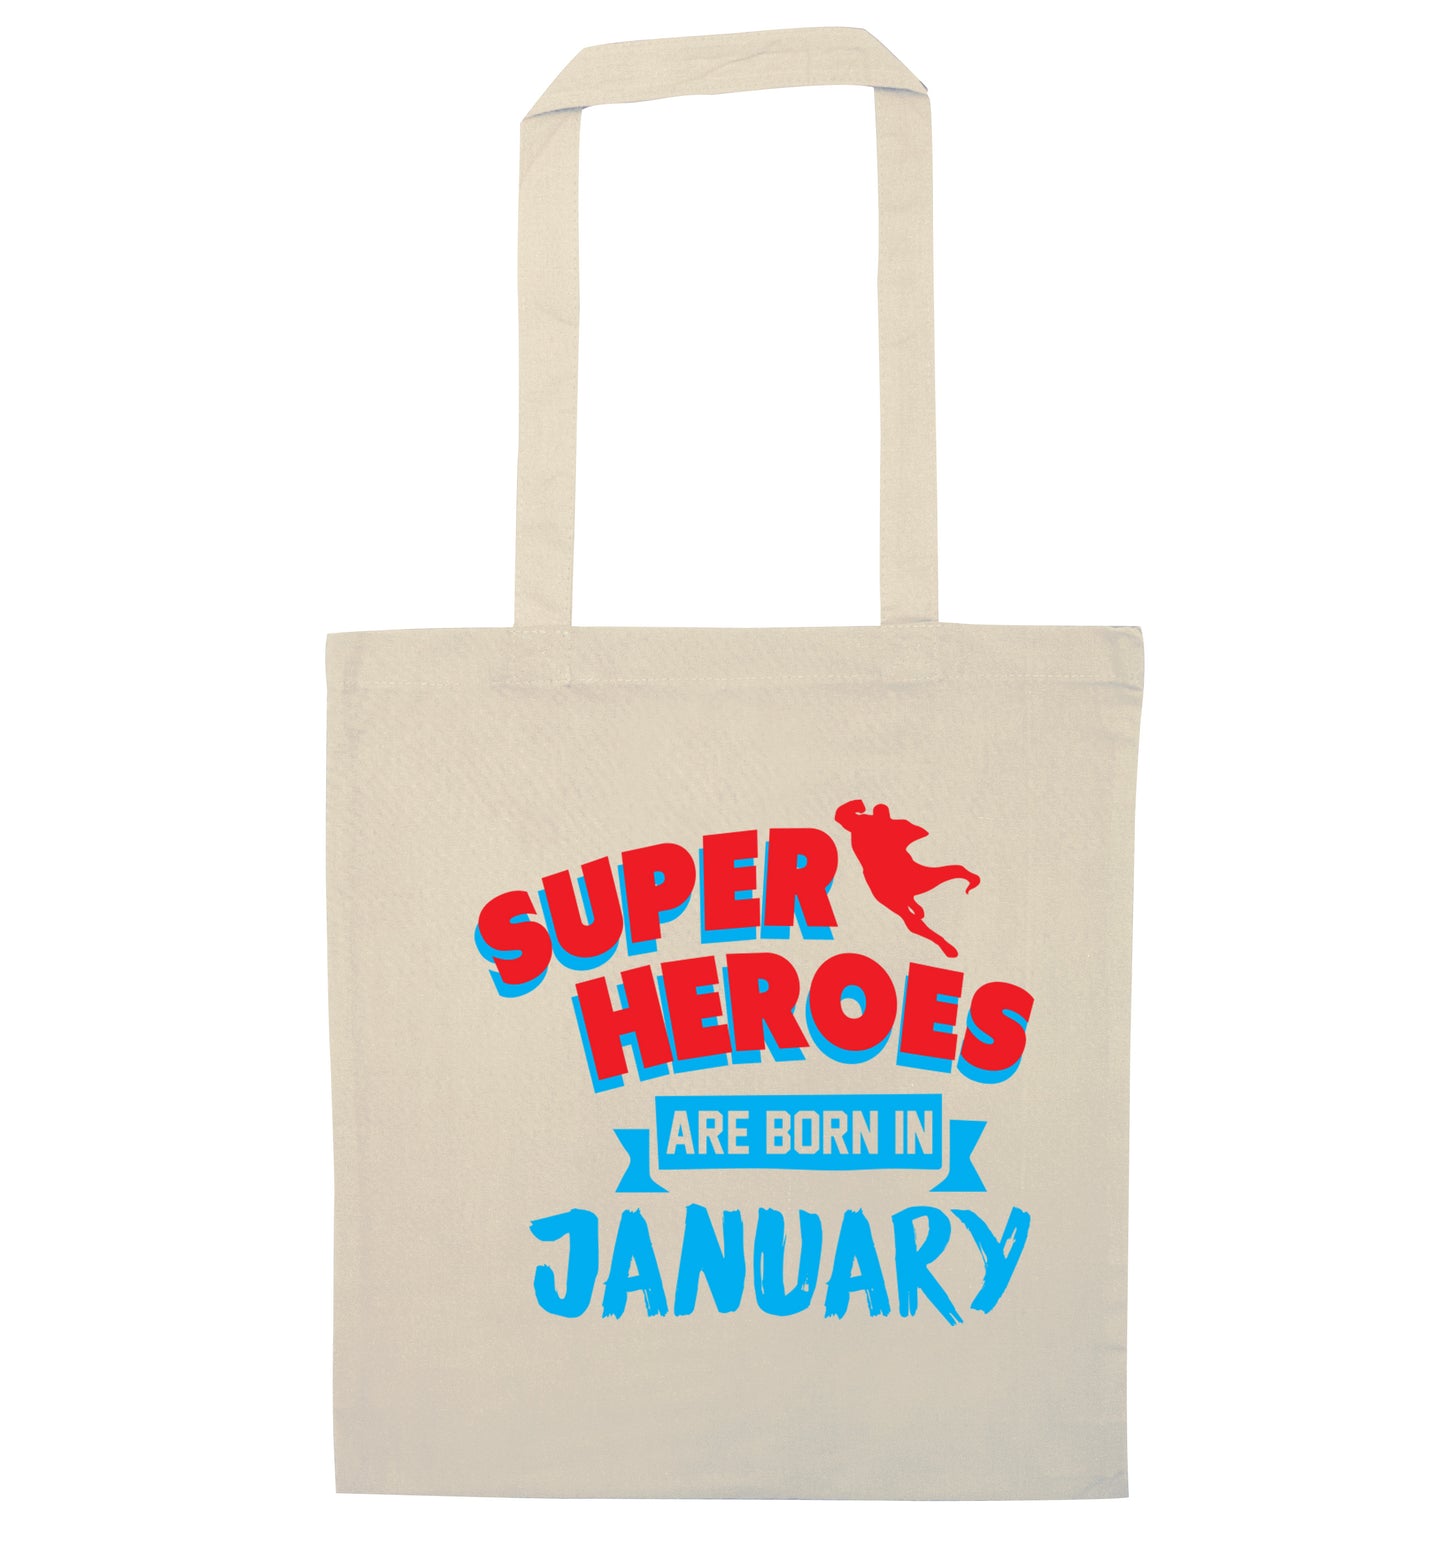 Superheros are born in January natural tote bag